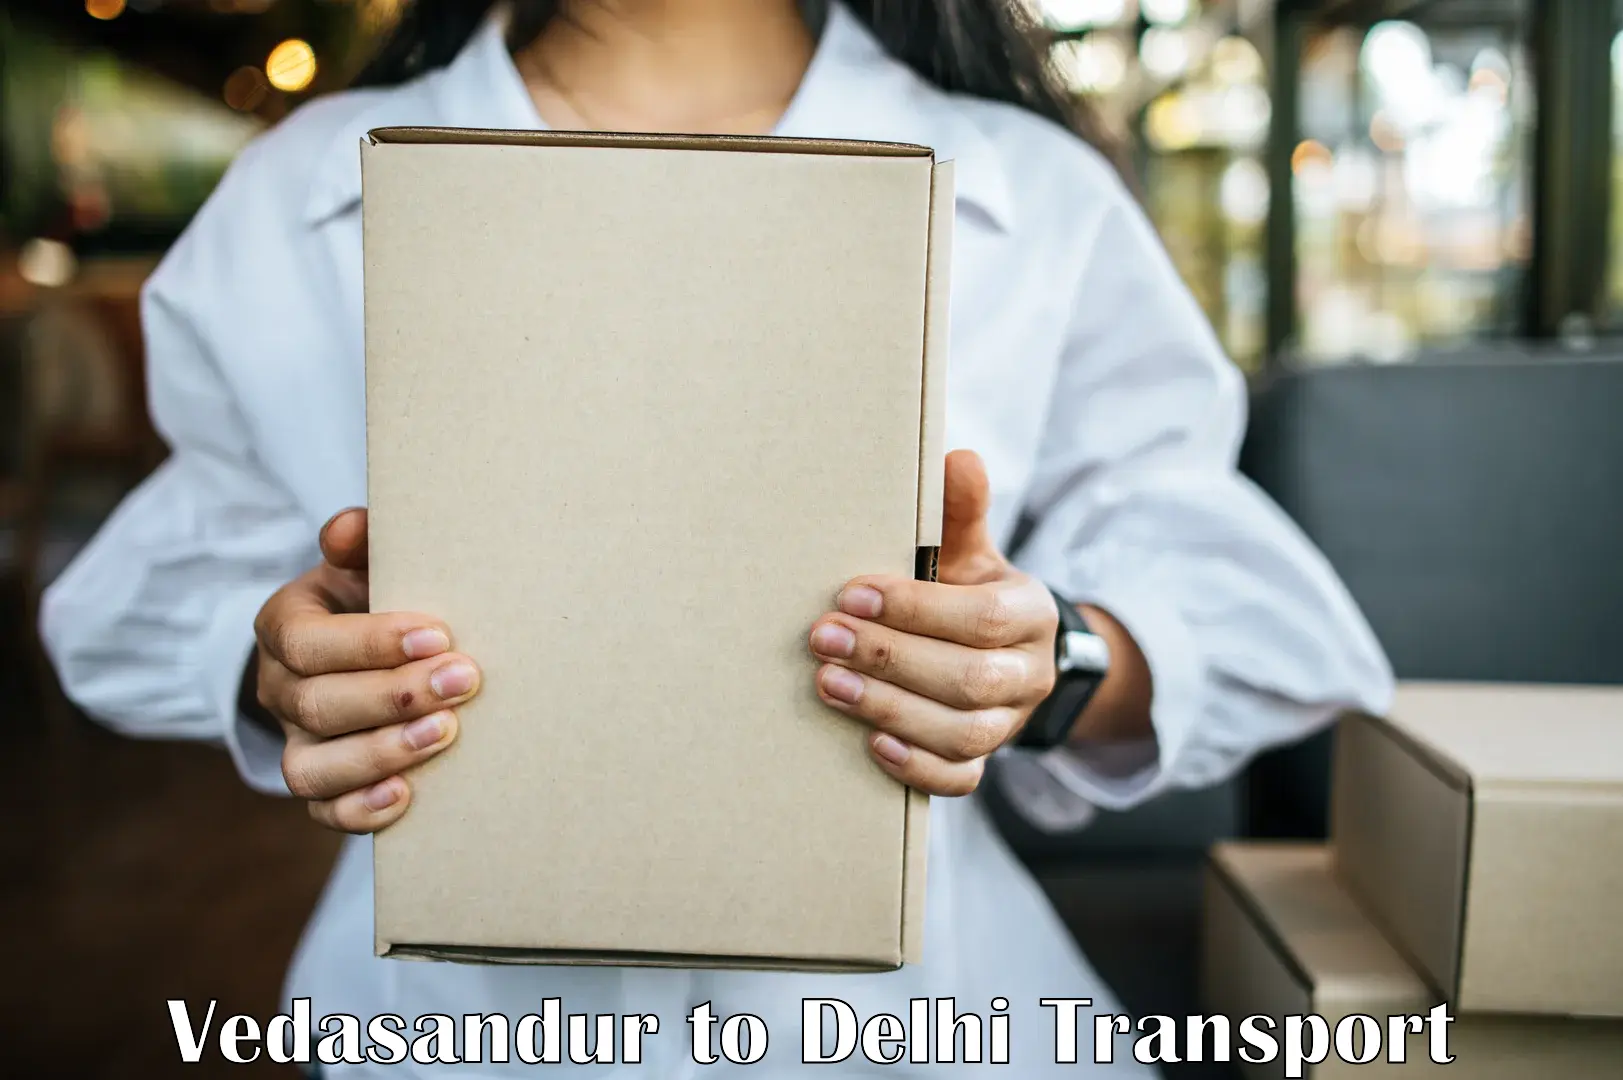 Air freight transport services Vedasandur to Delhi